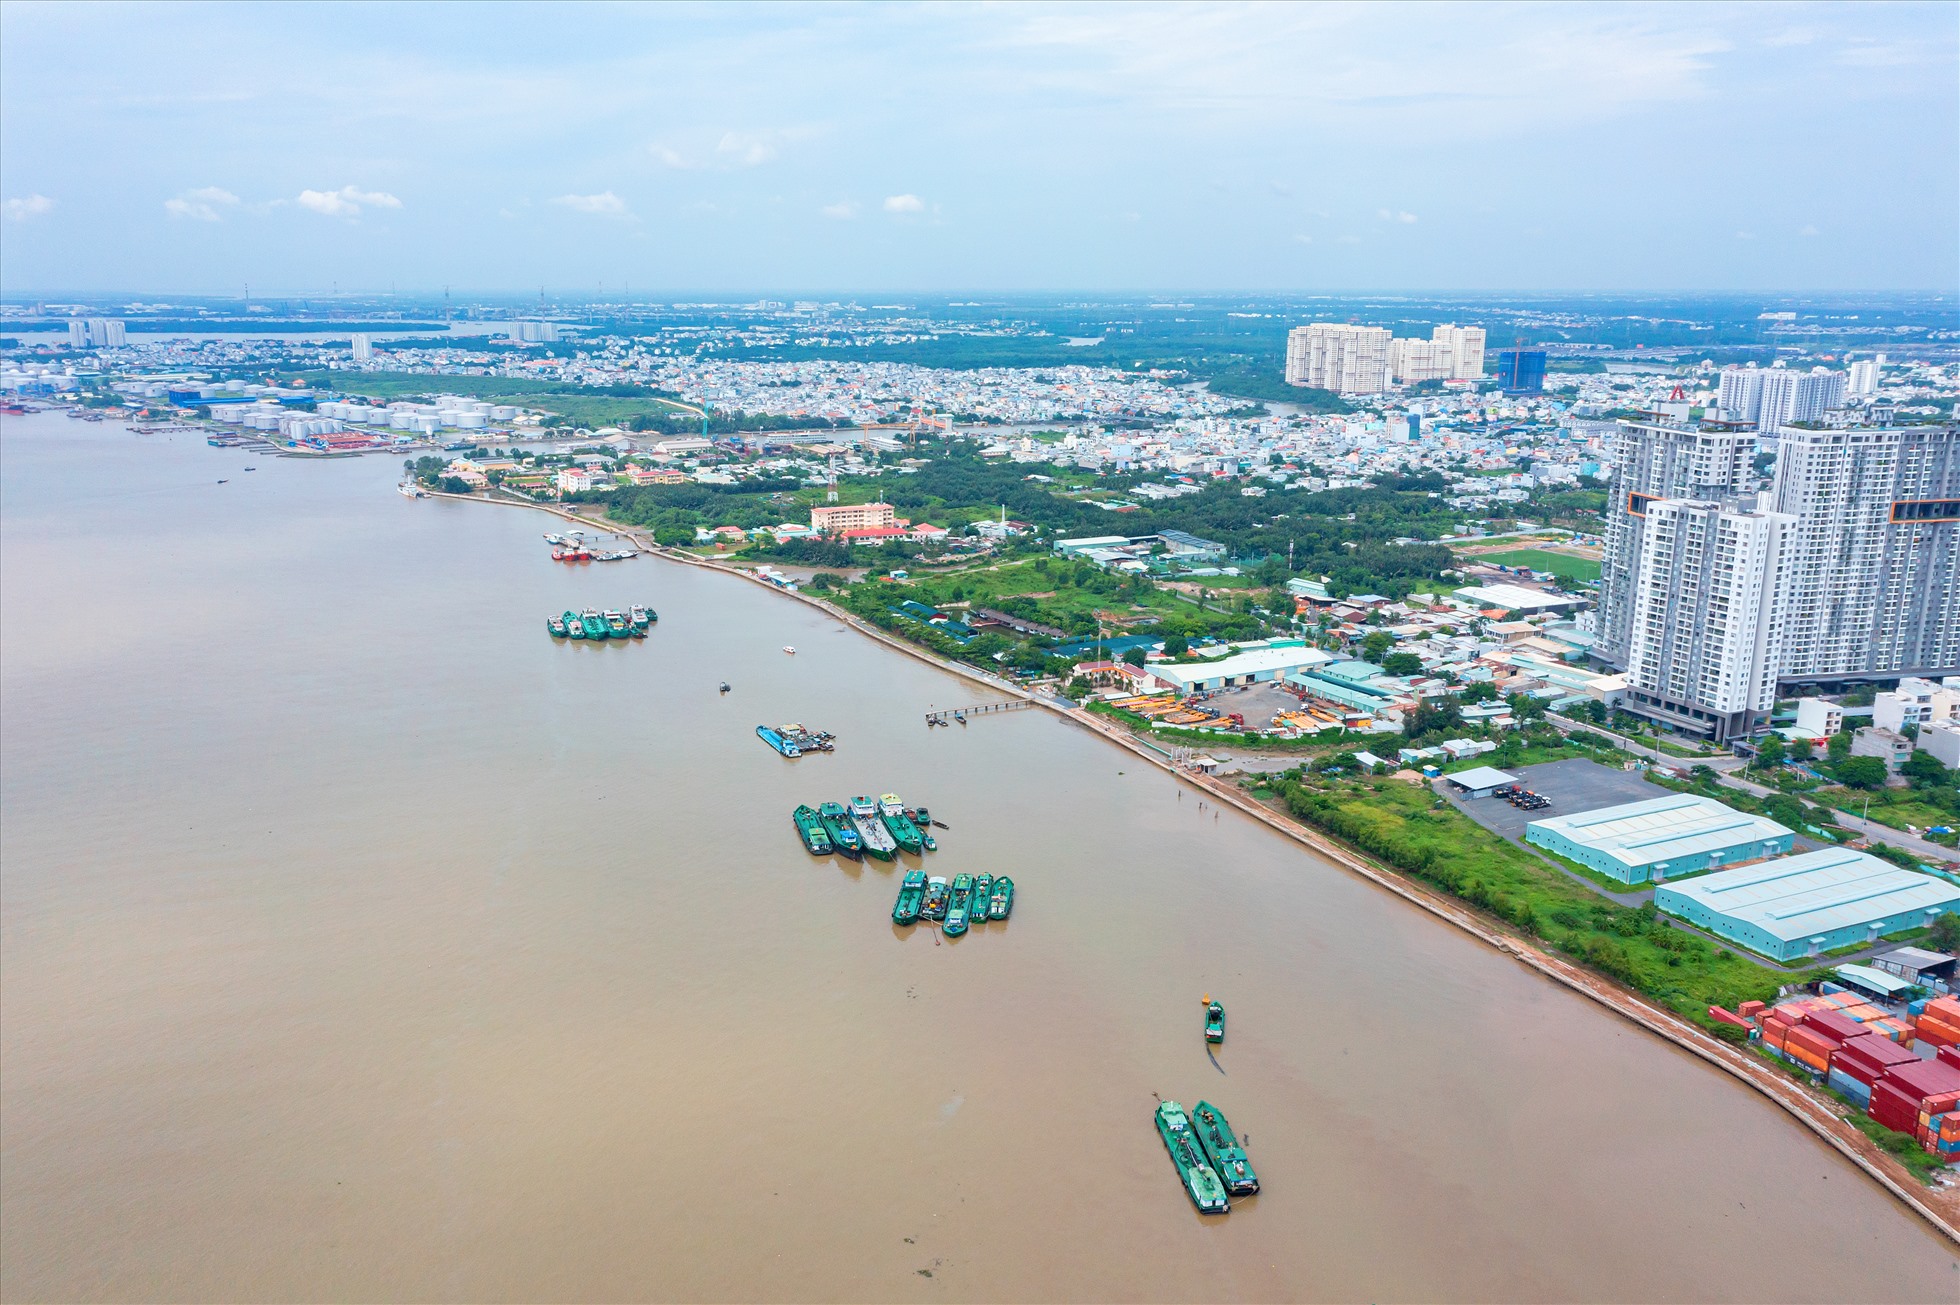 Ngoài 6 cống ngăn triều chính, dự án còn thi công 7,8 km đê kè ven sông Sài Gòn từ Vàm Thuật đến Sông Kinh với các cống nhỏ khẩu độ dưới 10m. Hiện hàng mục đe kè đã hoàn thành 85% khối lượng. Khi dự án đi vào vận hành, các van cống ở toàn bộ 6 cống ngăn triều lớn mở hoàn toàn, tàu thuyền trên sông sẽ giao thông thuỷ bình thường. Trong trường hợp triều cao, mưa lớn diễn ra, hệ thống 6 cống ngăn triều đóng hoàn toàn, lúc này, hệ thống giao thông thuỷ sẽ vẫn tiếp tục diễn ra thông qua các âu thuyền.